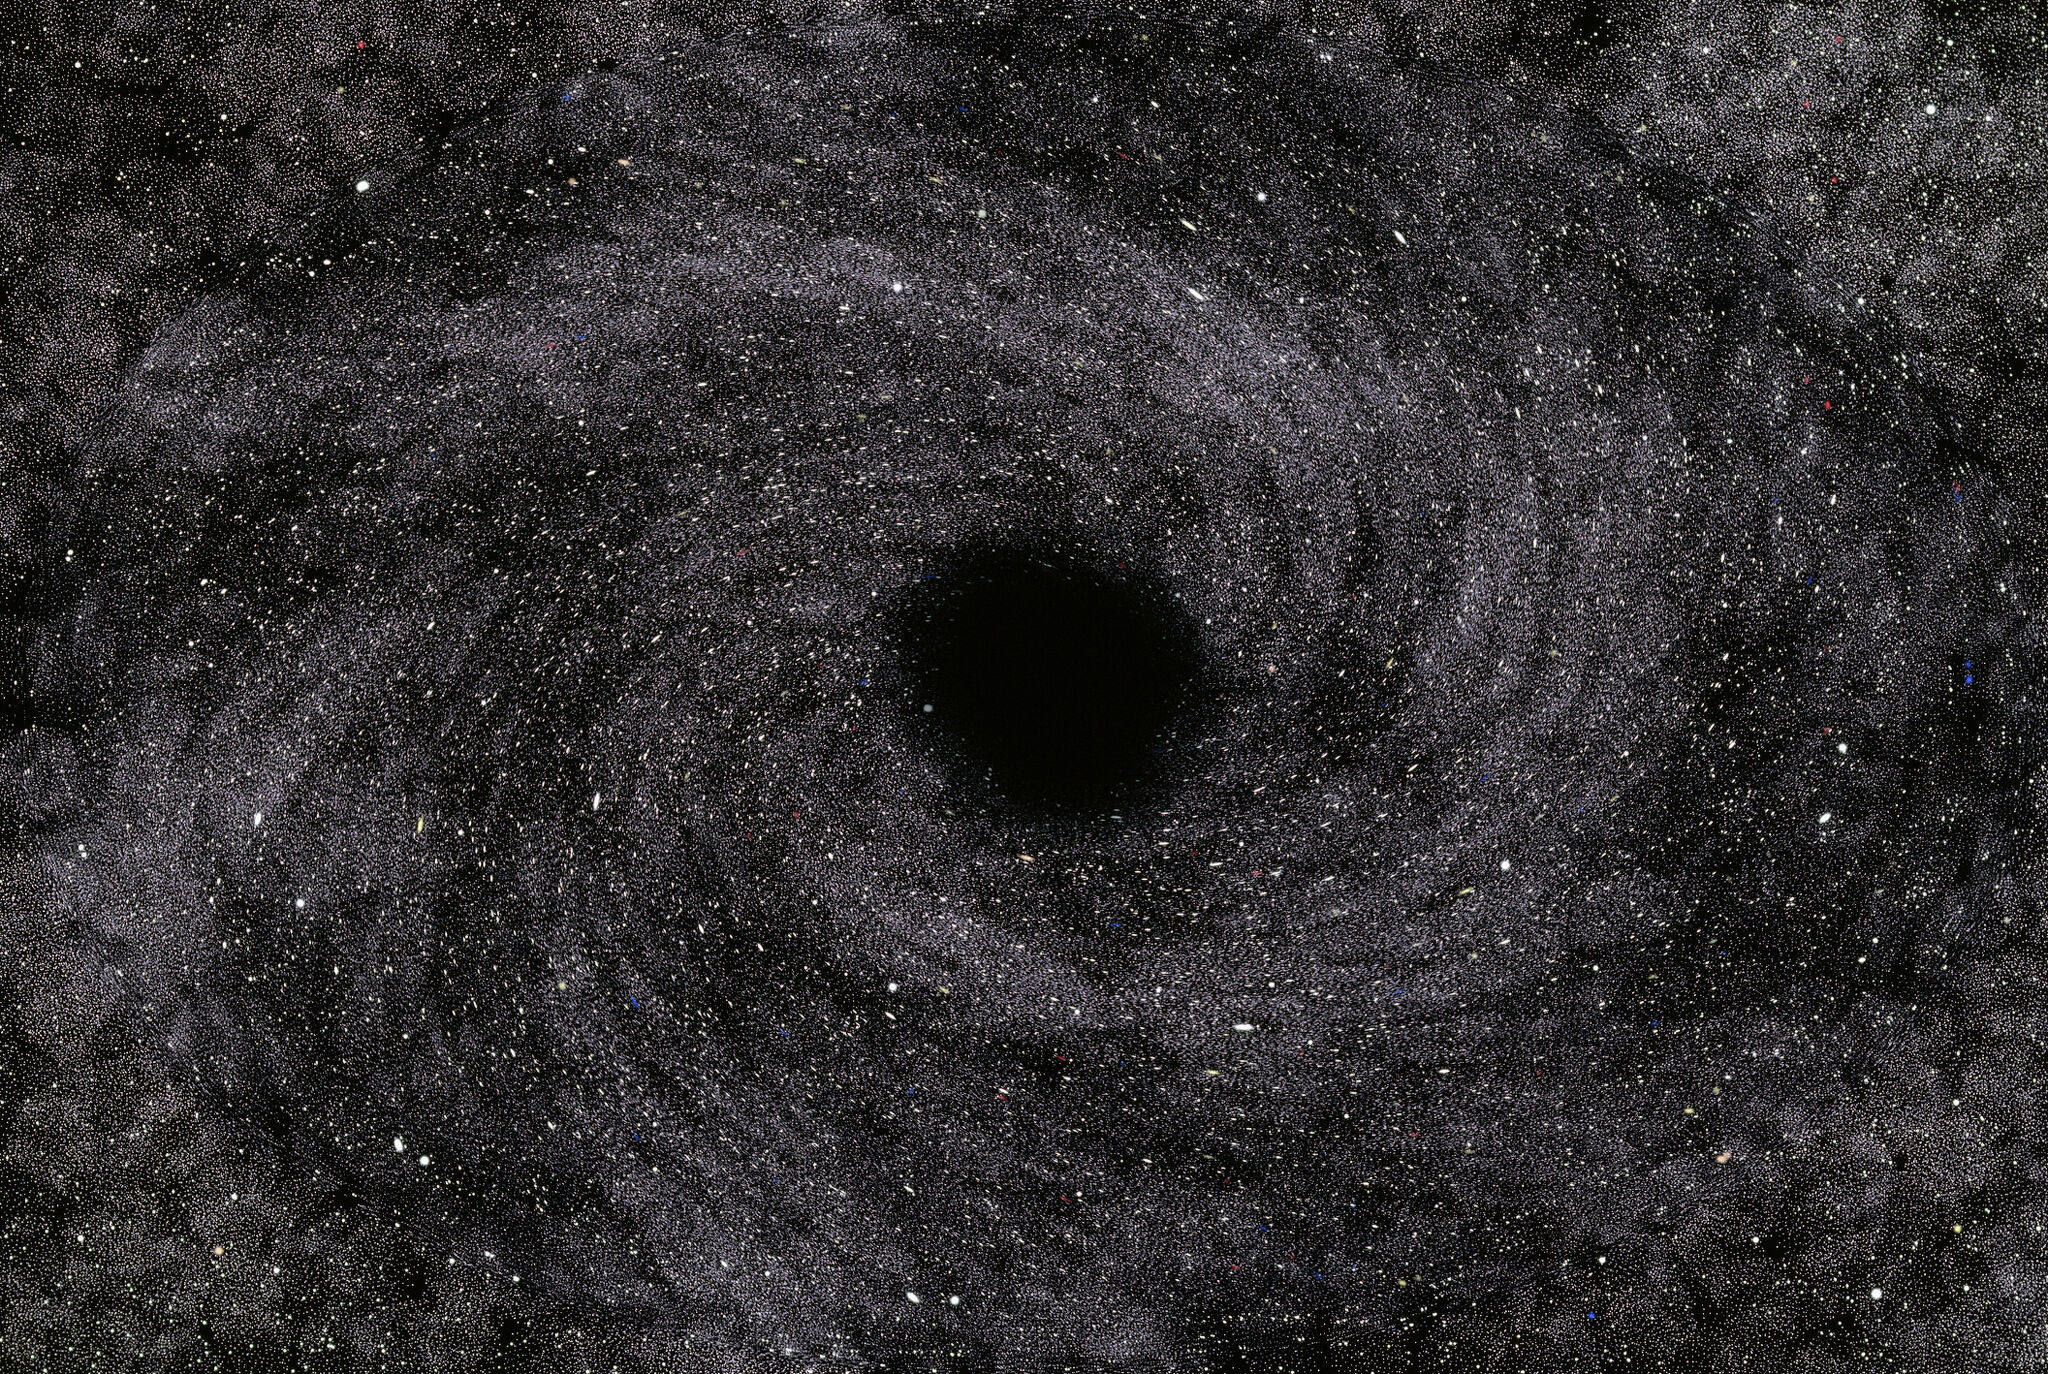 شاهد باحثو جامعة كاليفورنيا في سانتا كروز نجمًا يلتهمه ثقب أسود